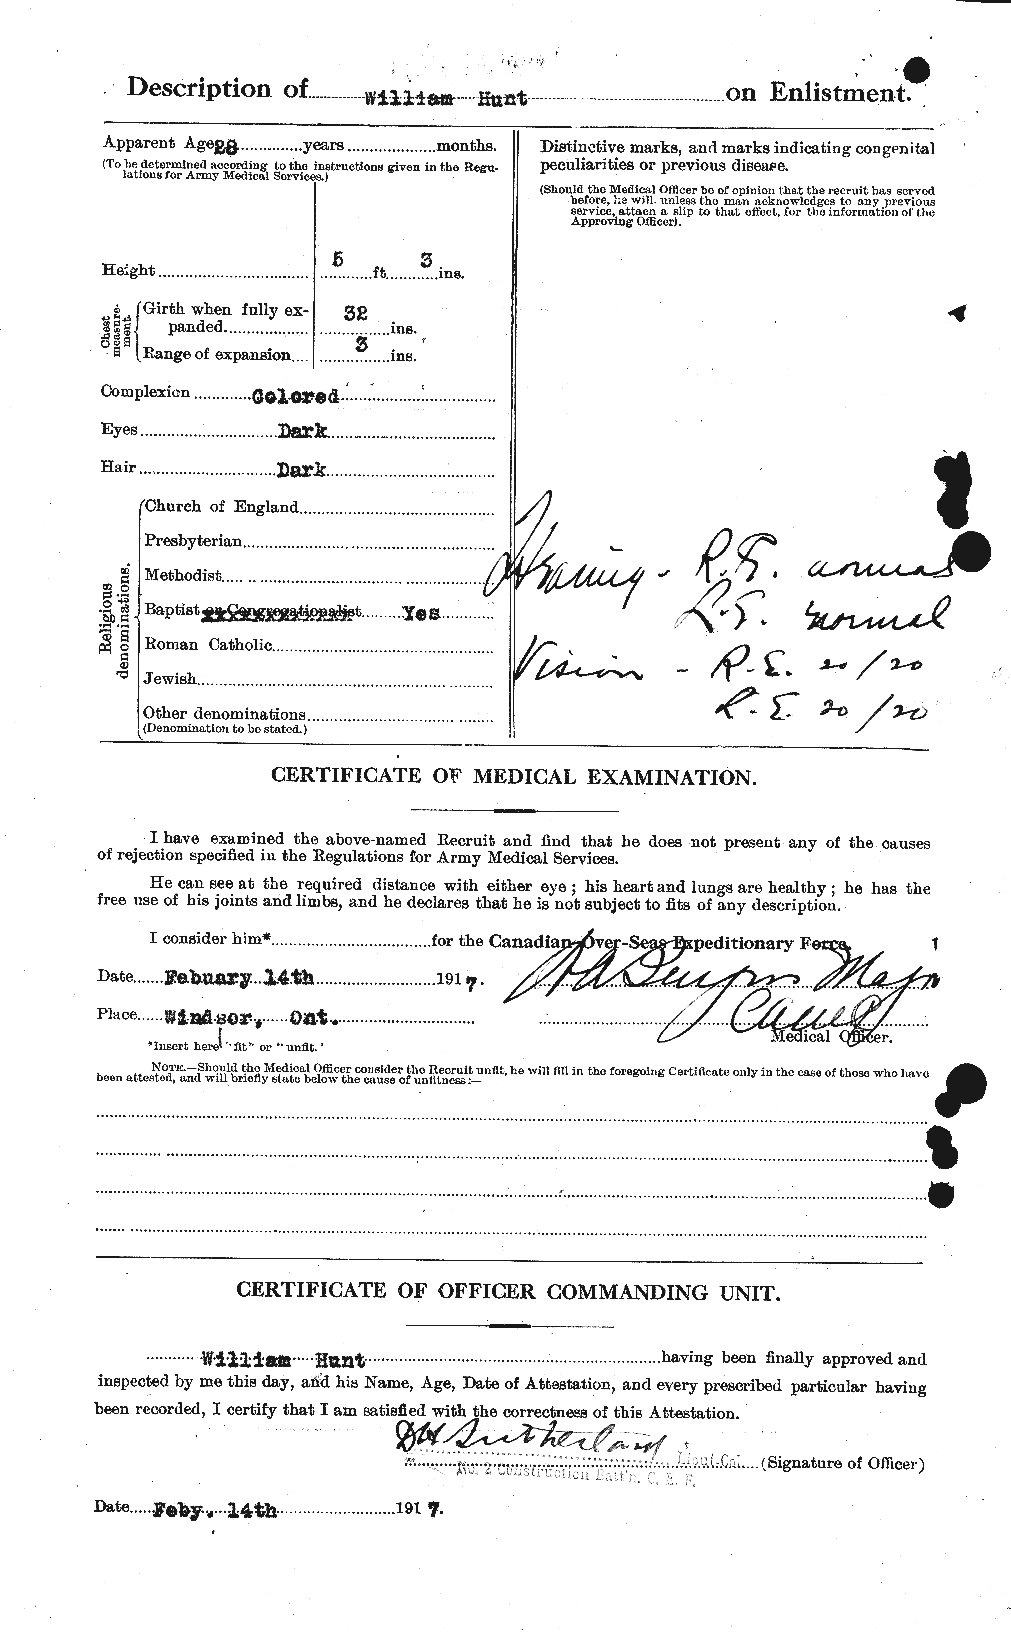 Dossiers du Personnel de la Première Guerre mondiale - CEC 408901b